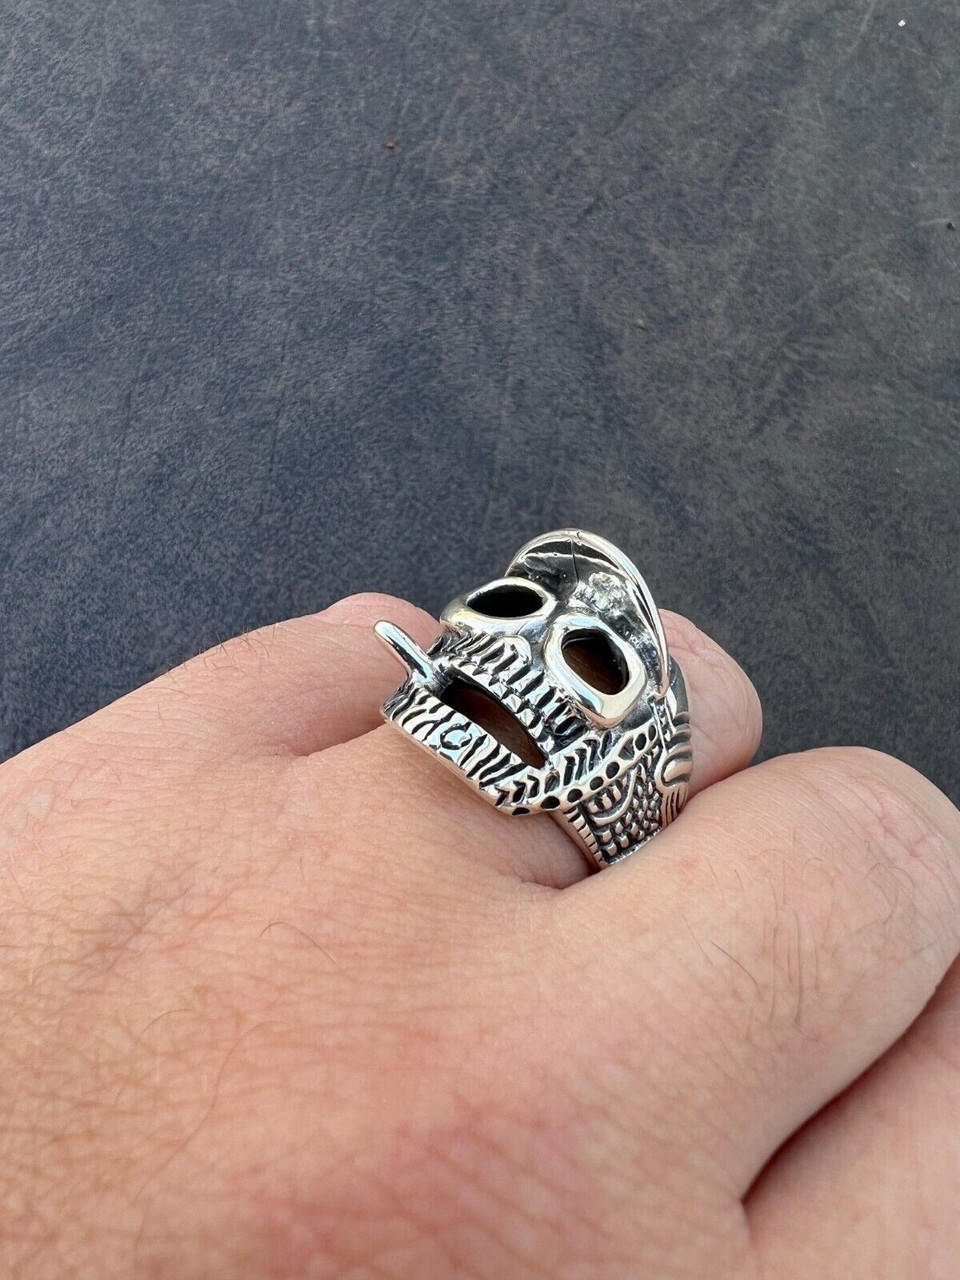 Smoker's Clip Holder Ring Punk Skeleton Hand